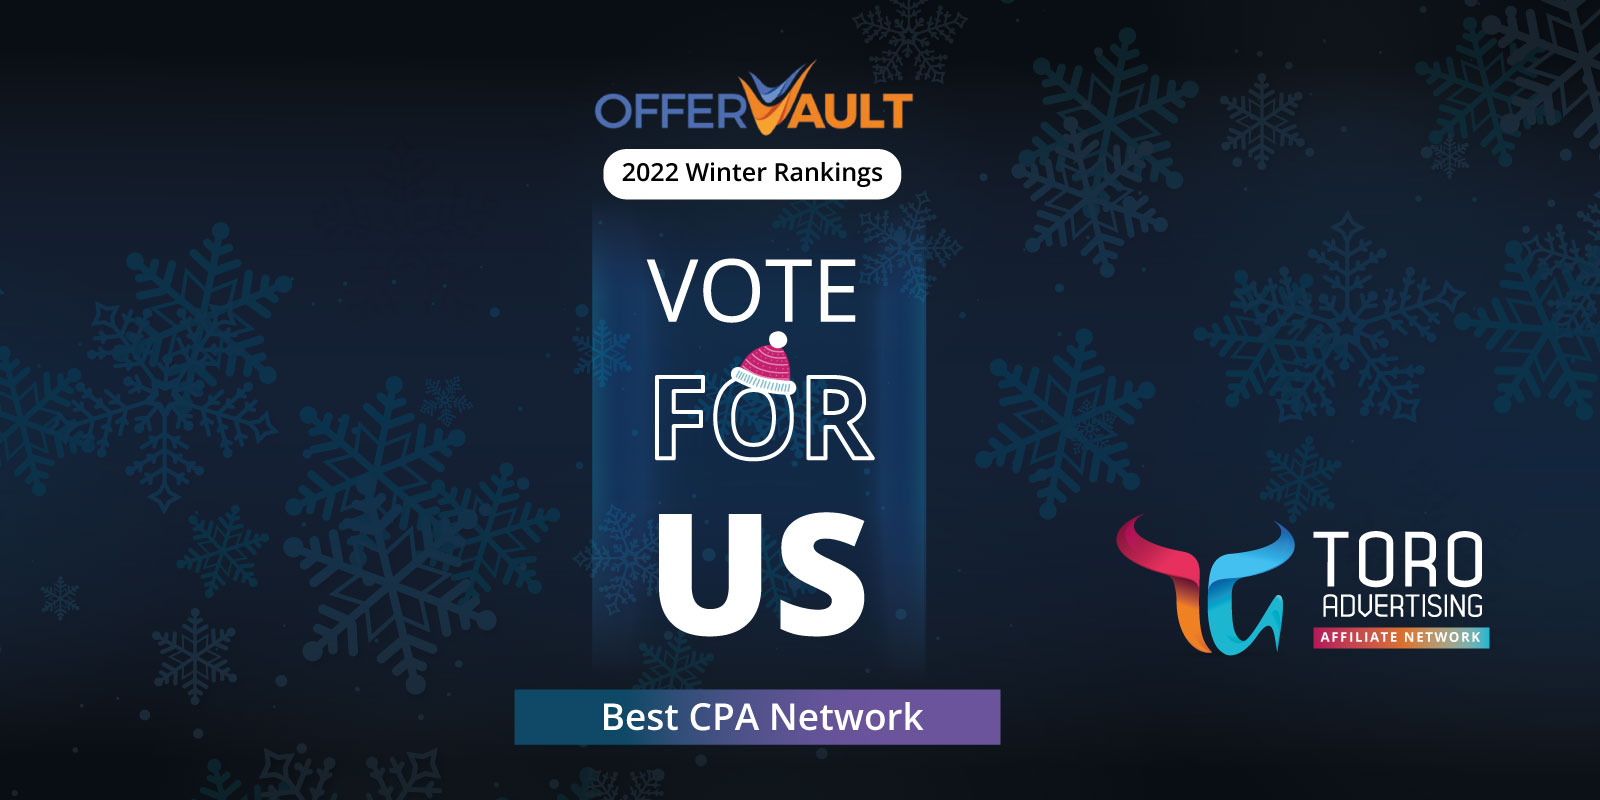 Best CPA Network - Offervault